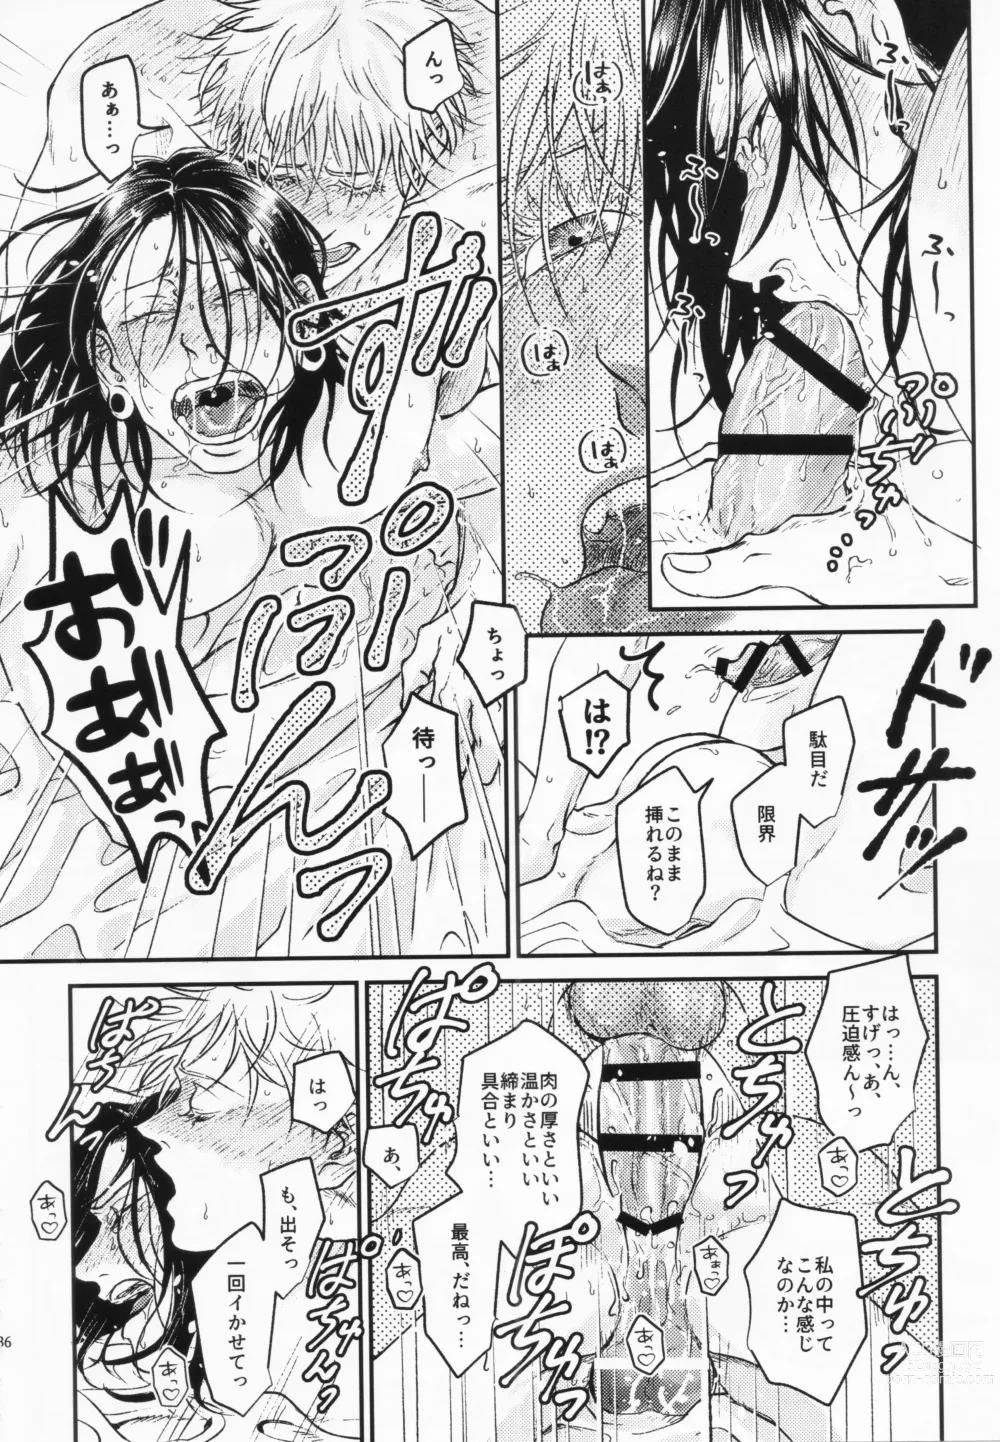 Page 33 of doujinshi Surussho.